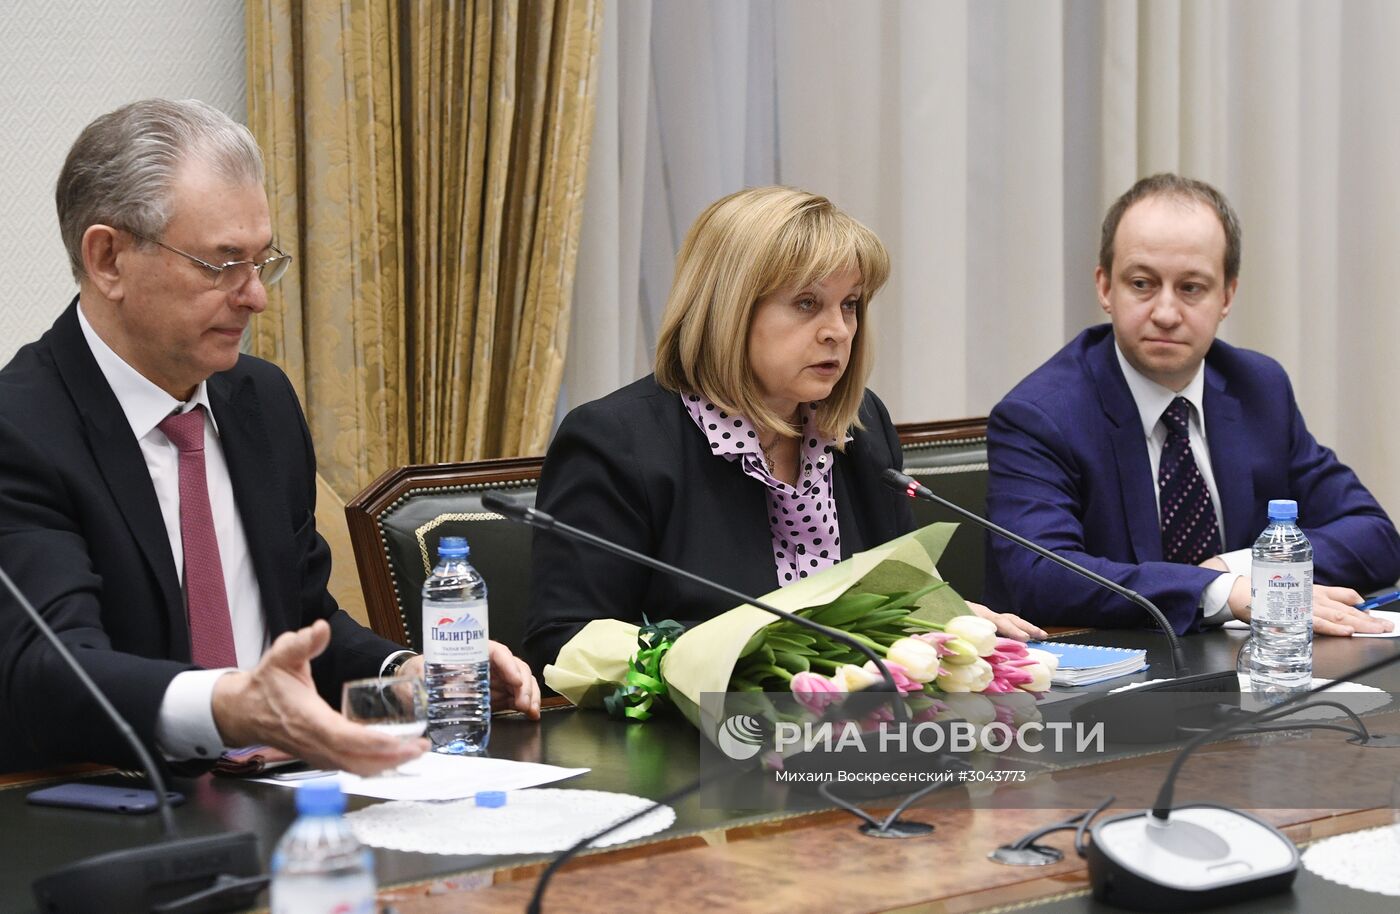 Председатель ЦИК РФ Э. Памфилова провела встречи с лидерами непарламентских партий